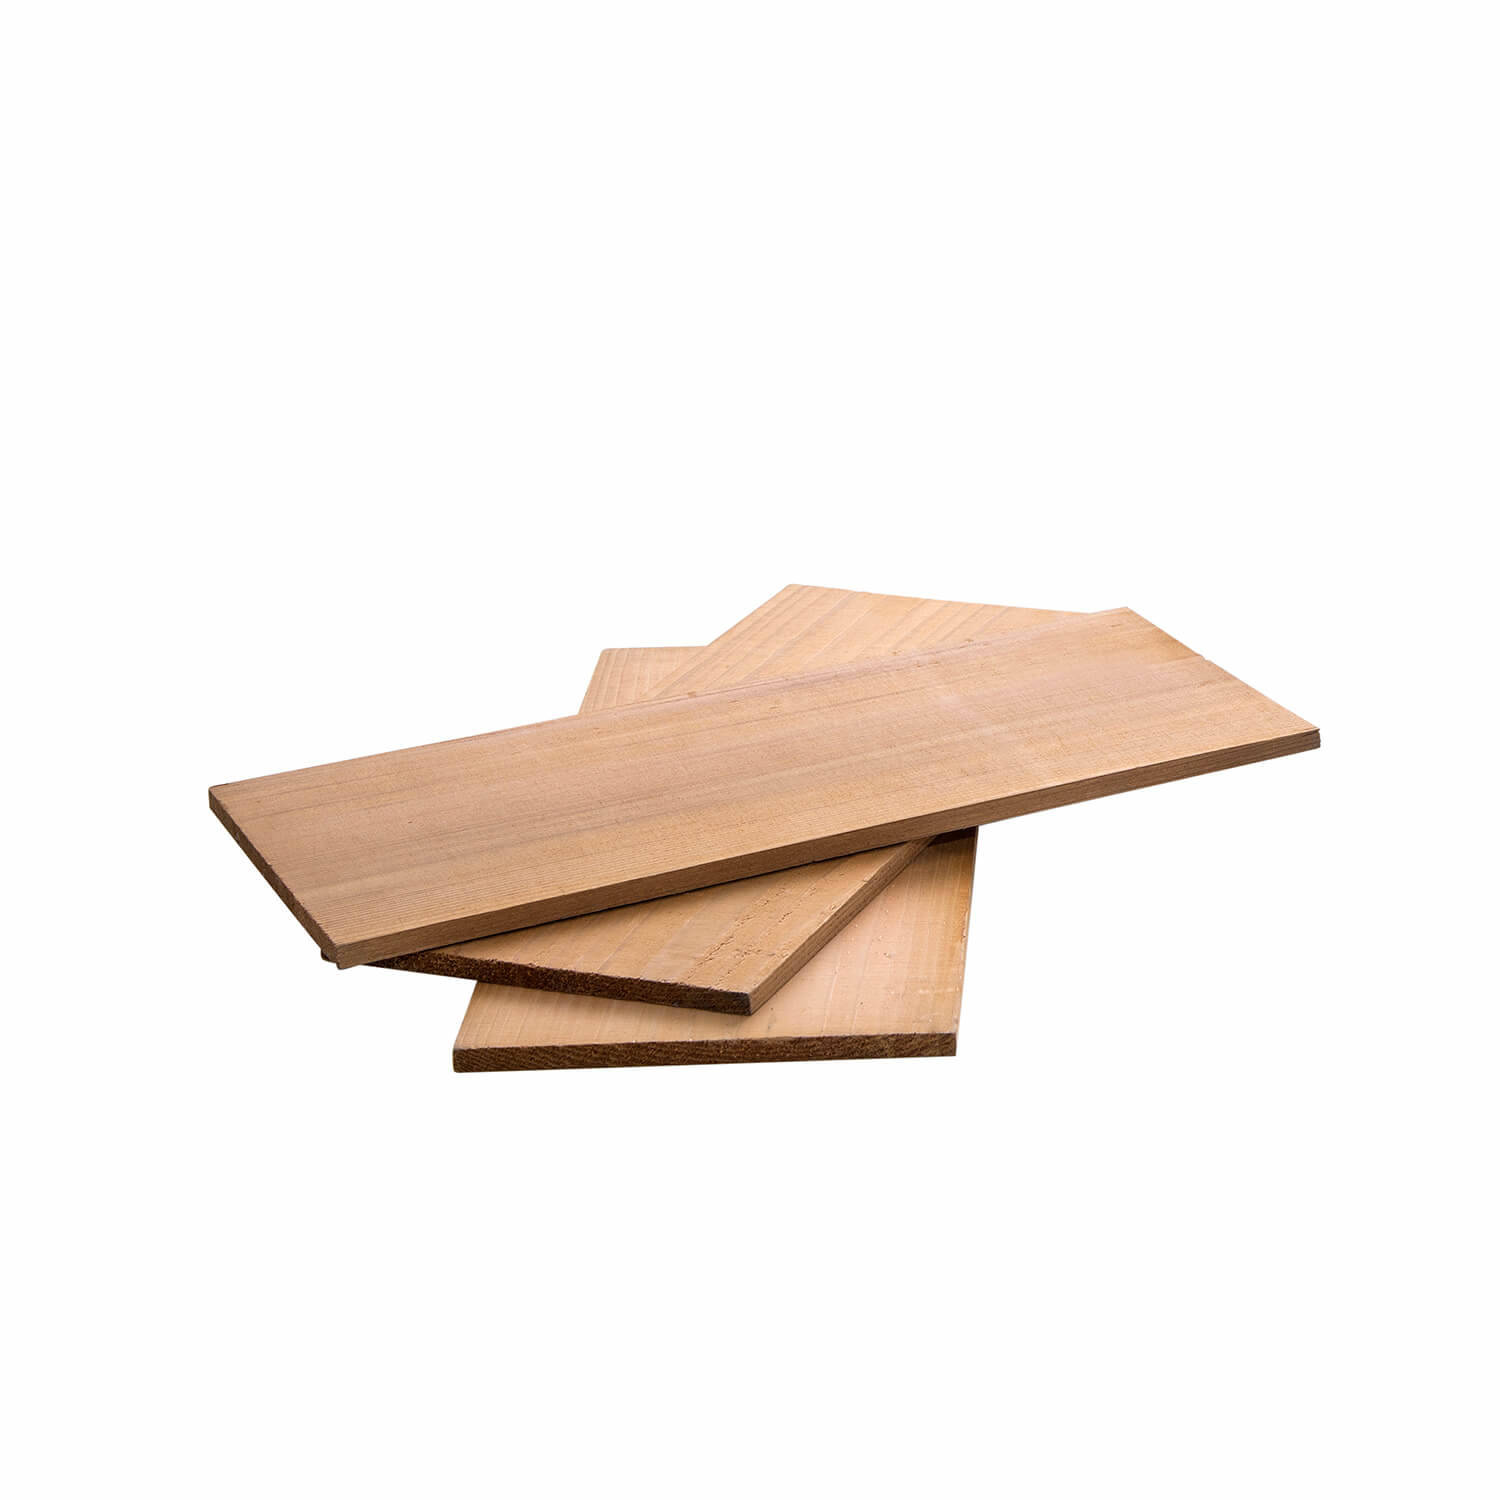 ALL&apos;GRILL Cederhouten planken set, 3 stuks elk 30 x 13 x 1 cm